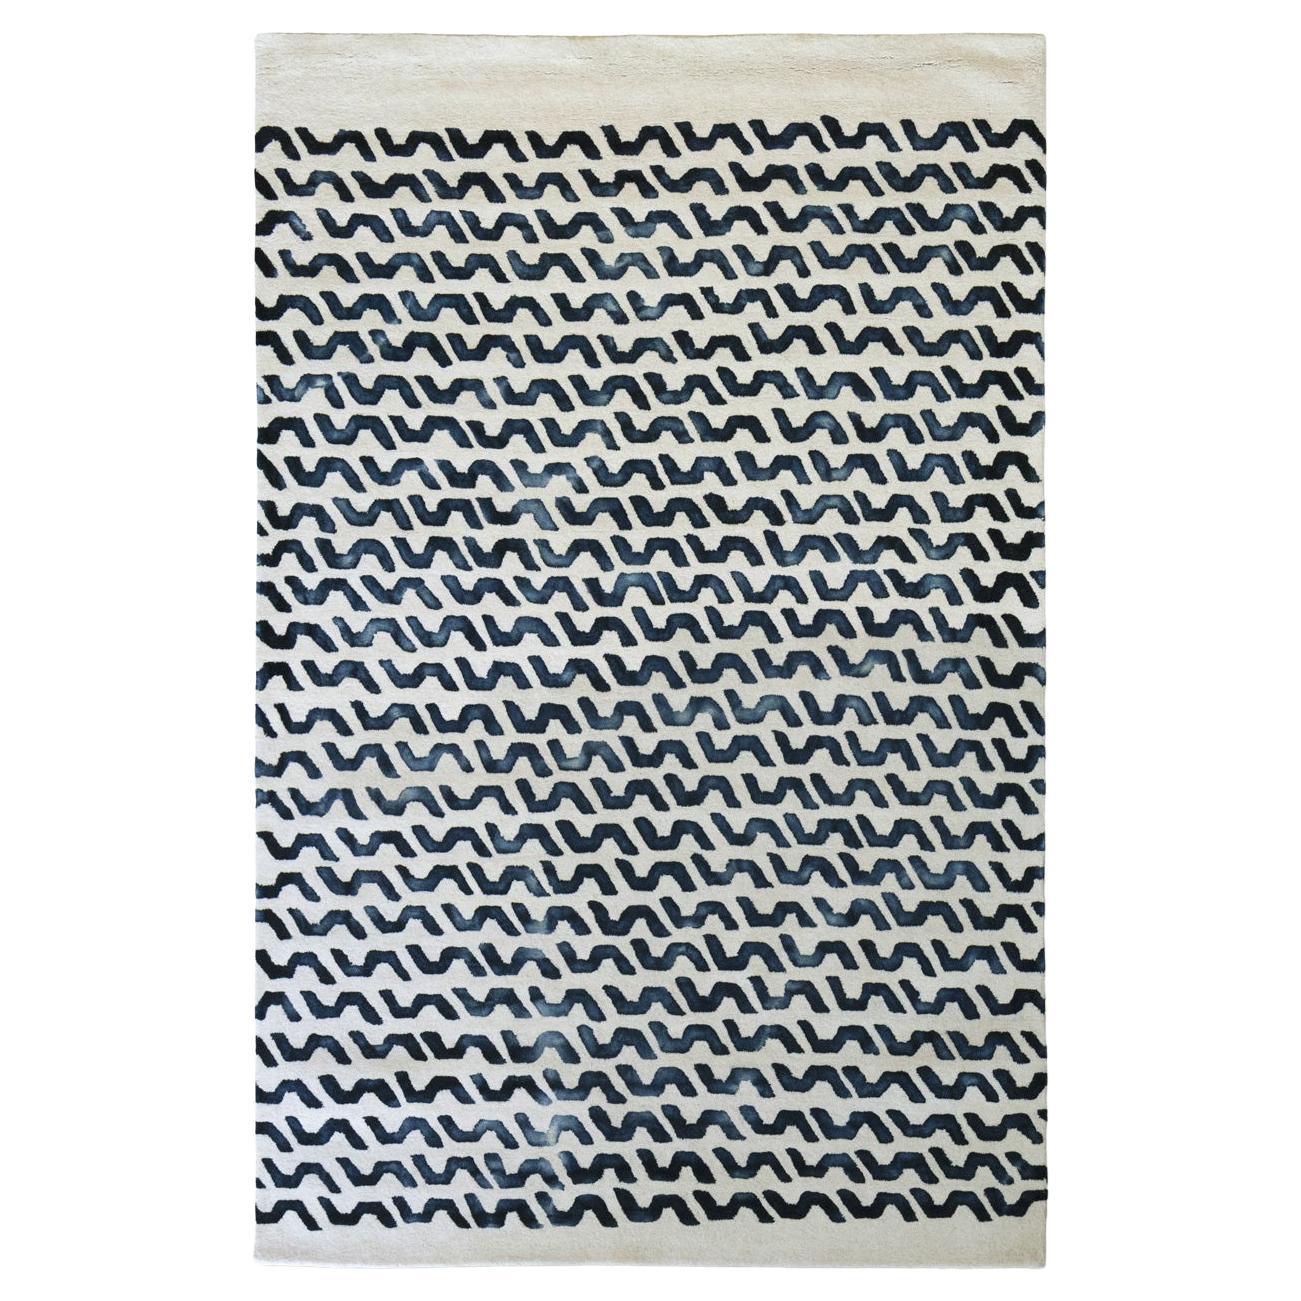 Tappeto Contemporaneo in Lana Motivi Tie-dye Design Deanna Comellini 200x300cm For Sale